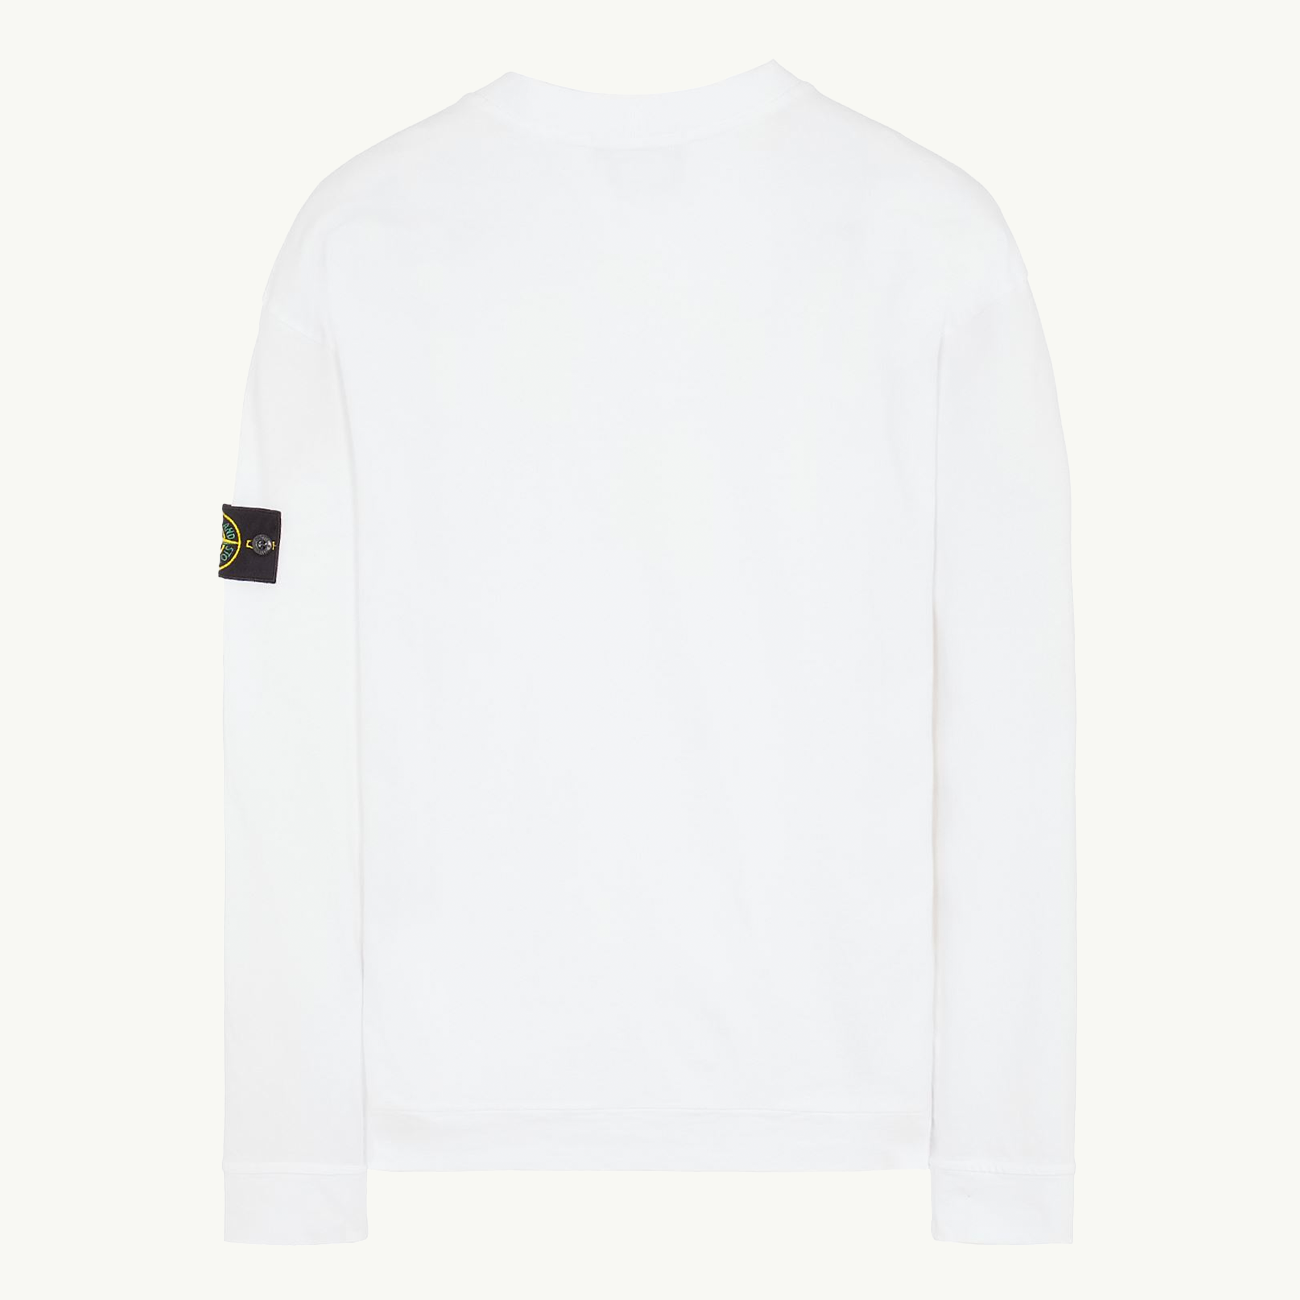 Sweatshirt Patch Crew Lightweight Cotton - White 0180